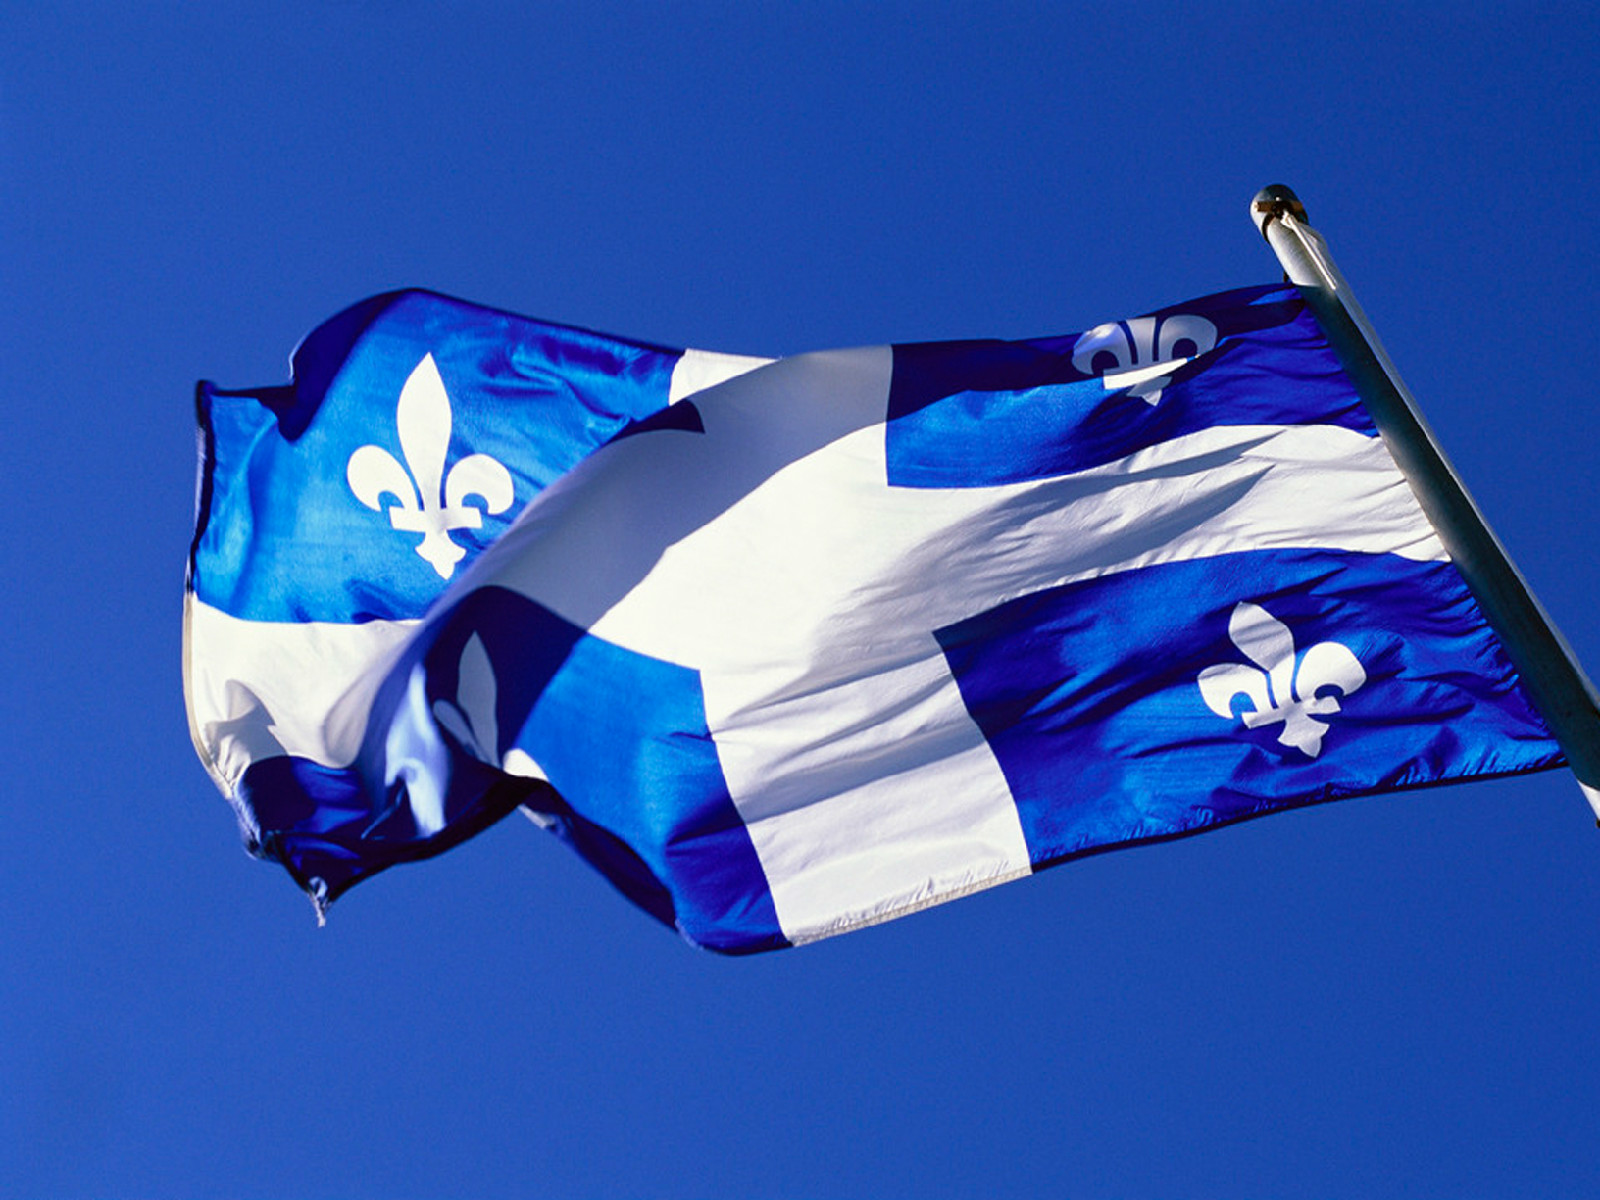 魁北克省旗